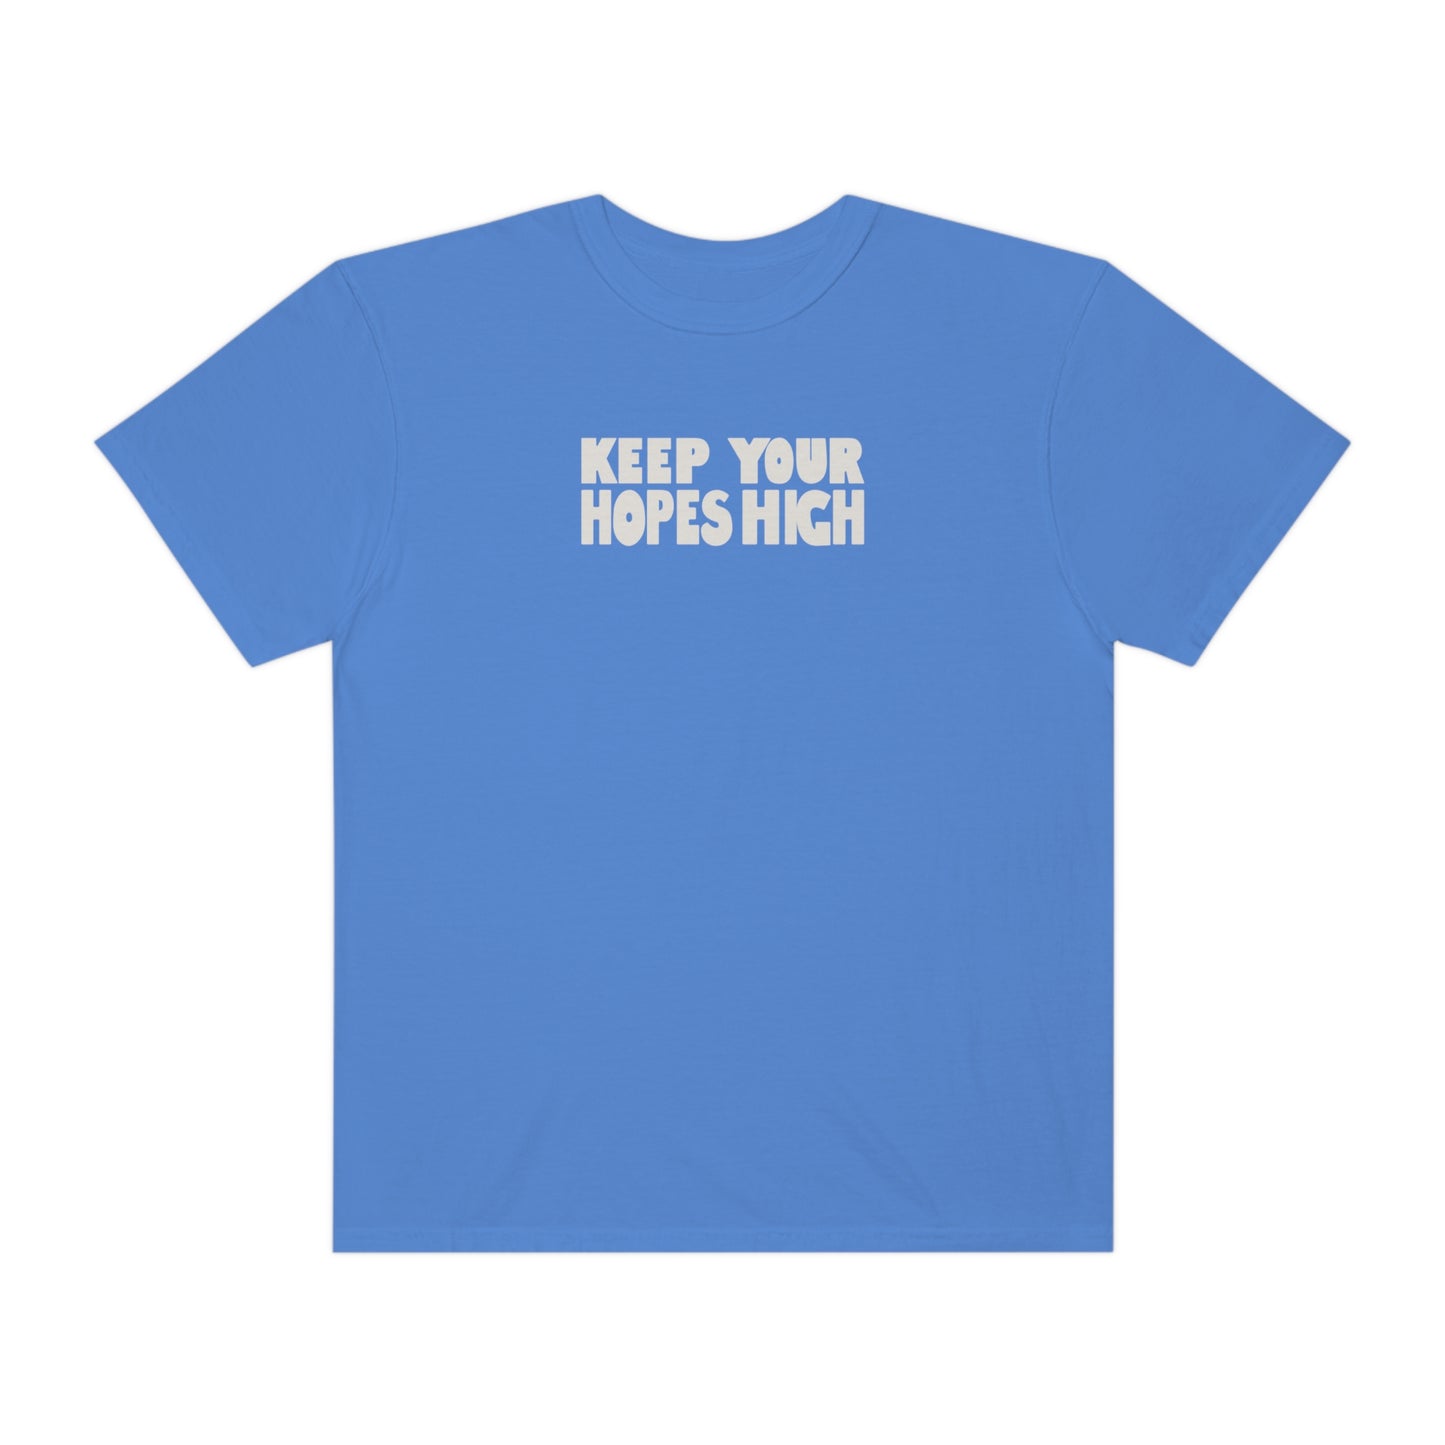 HIGH HOPES | Faith-Inspired Graphic T-Shirt | Original Design | High Quality